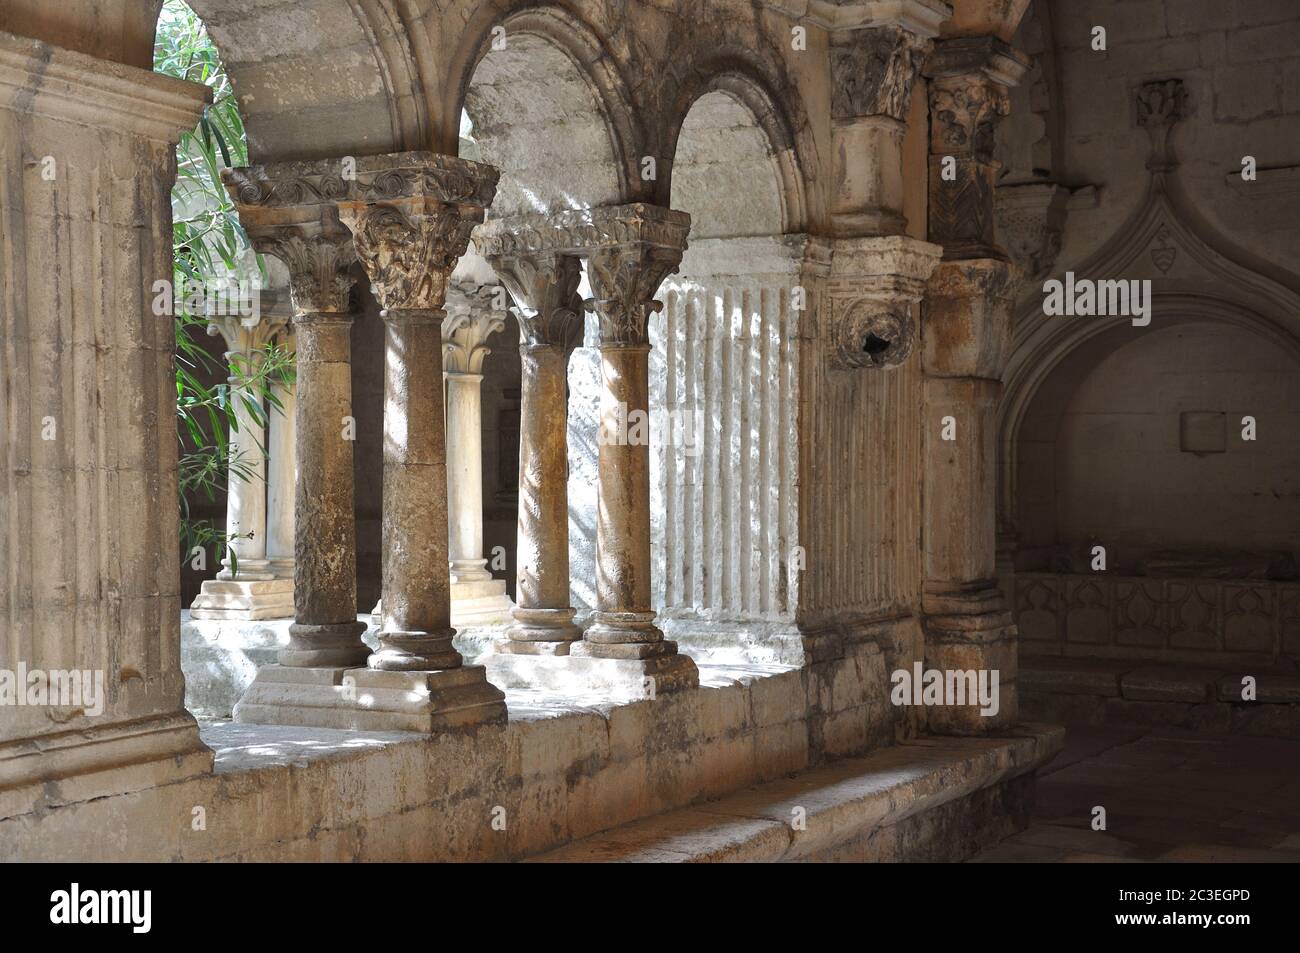 Ritiro spirituale e riflessione nell'abbazia, Francia Foto Stock